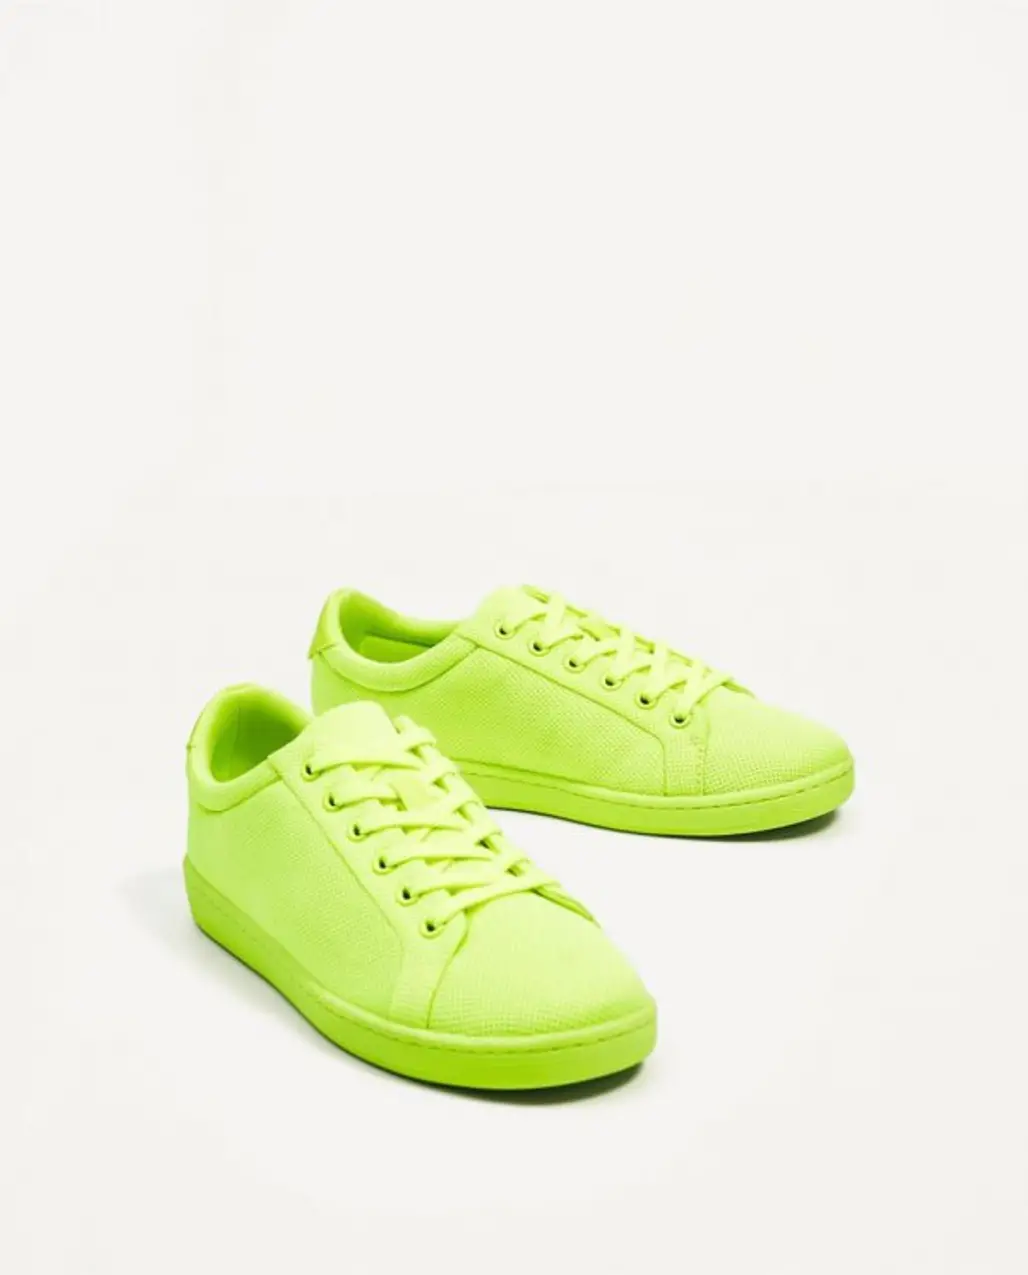 footwear, shoe, green, yellow, sneakers,